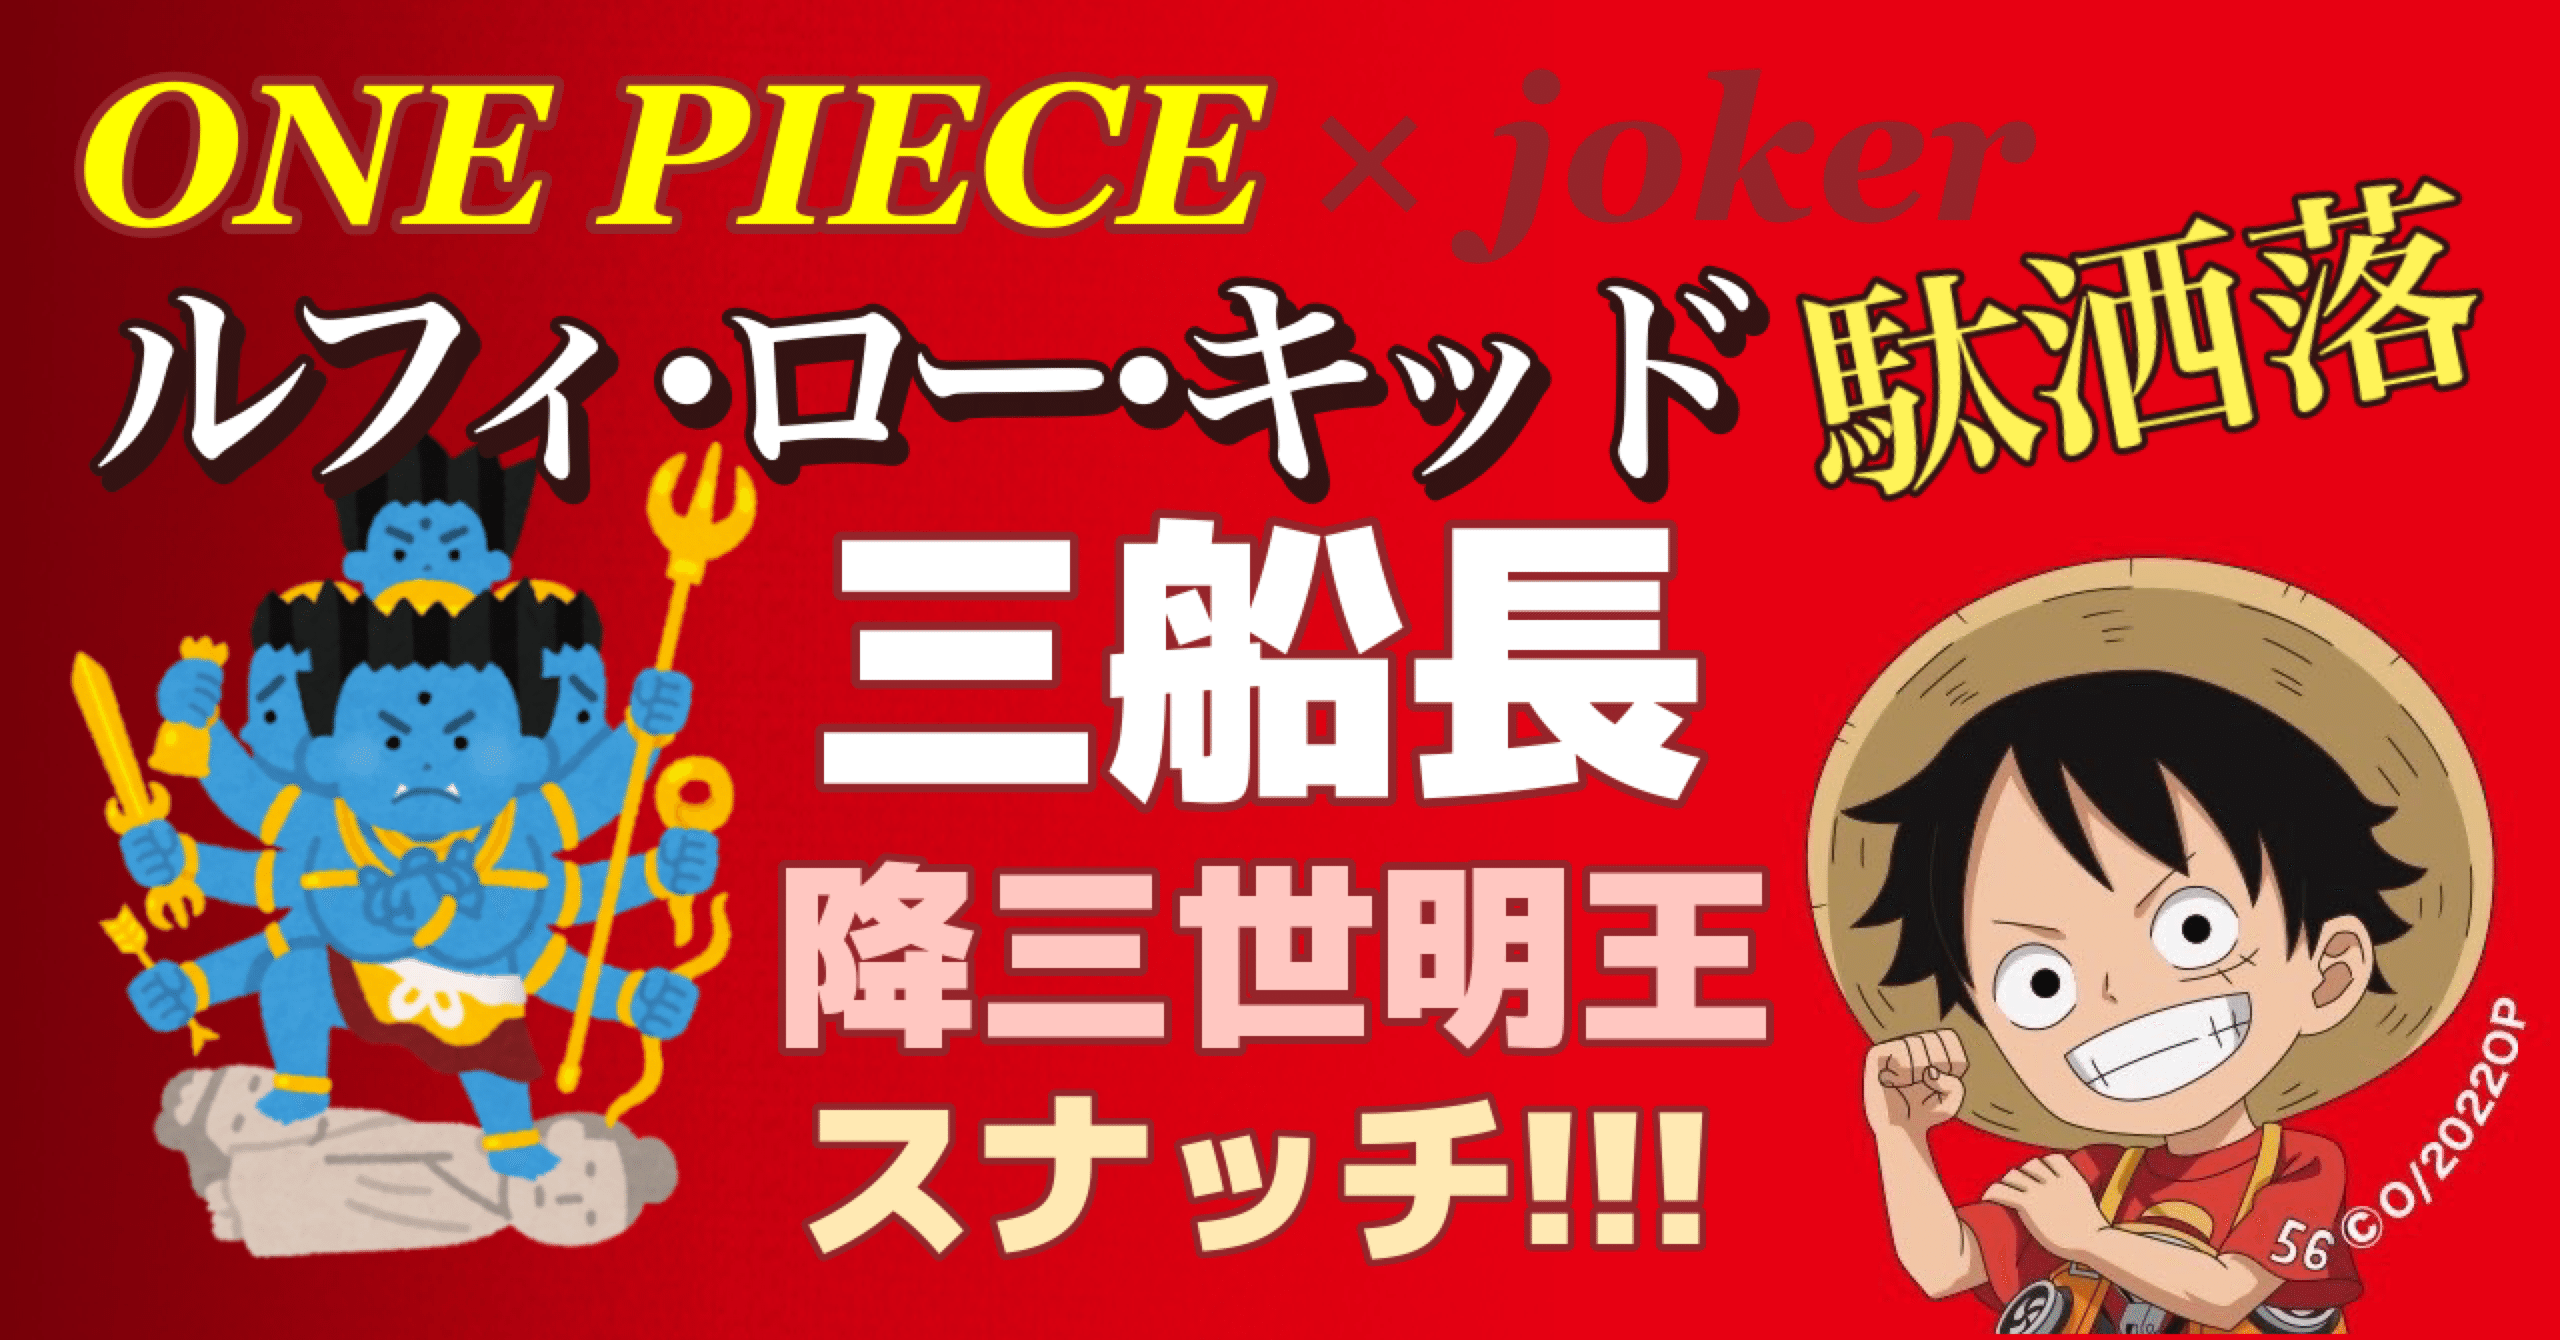 One Piece ルフィ ロー キッド三船長でダジャレ エンブンノート Note